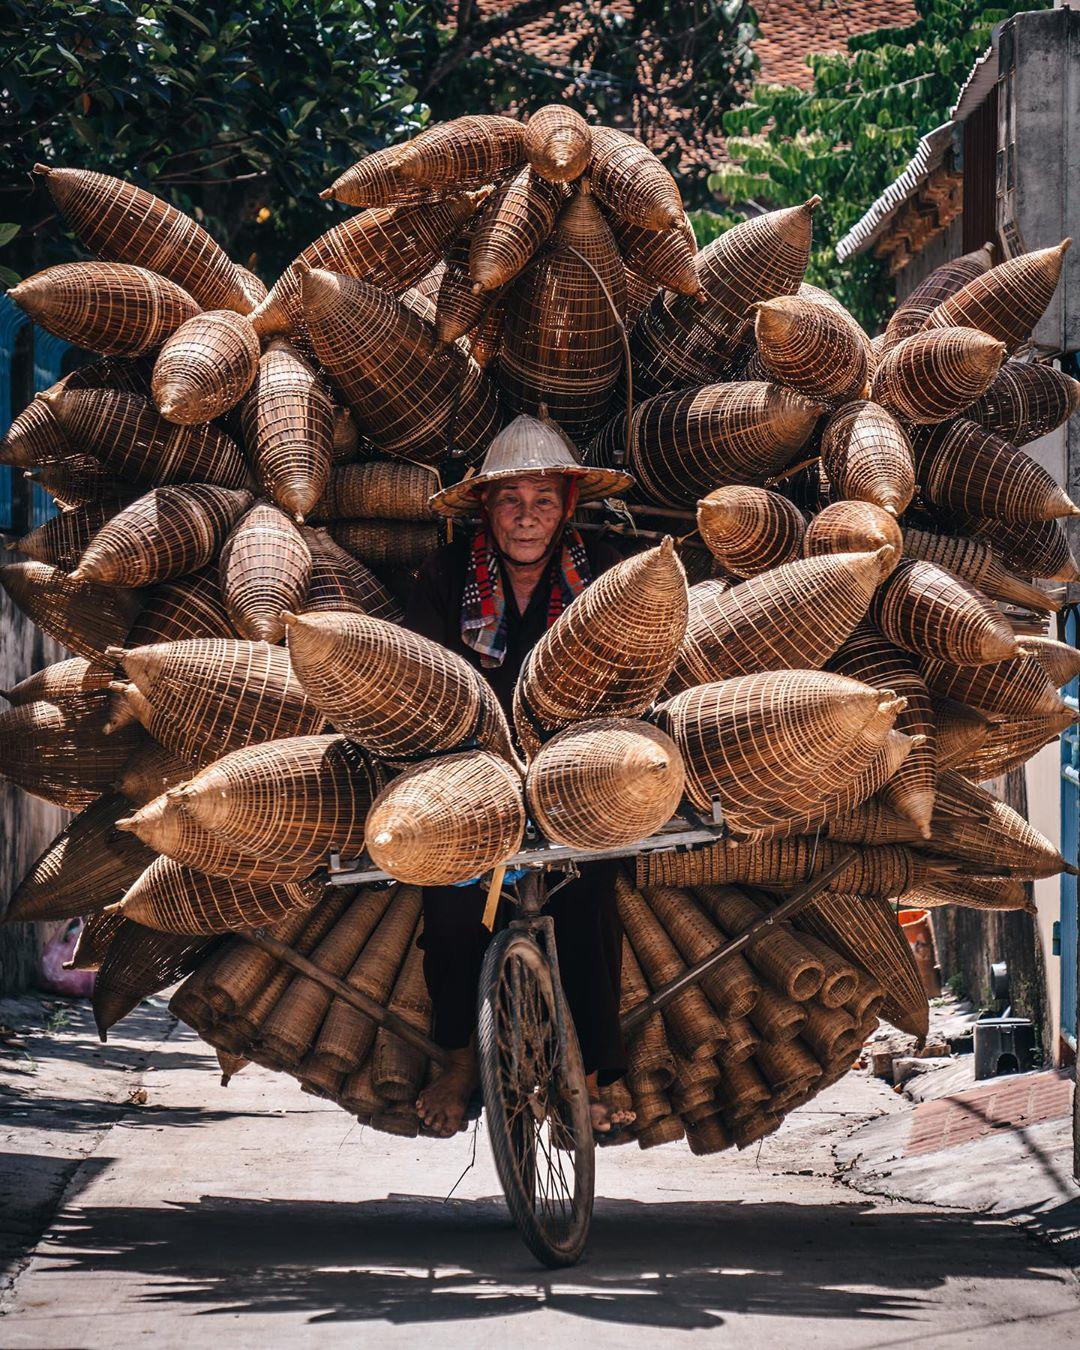  越南街头卖鱼篓的老人，来自摄影师Rkrkrk。 